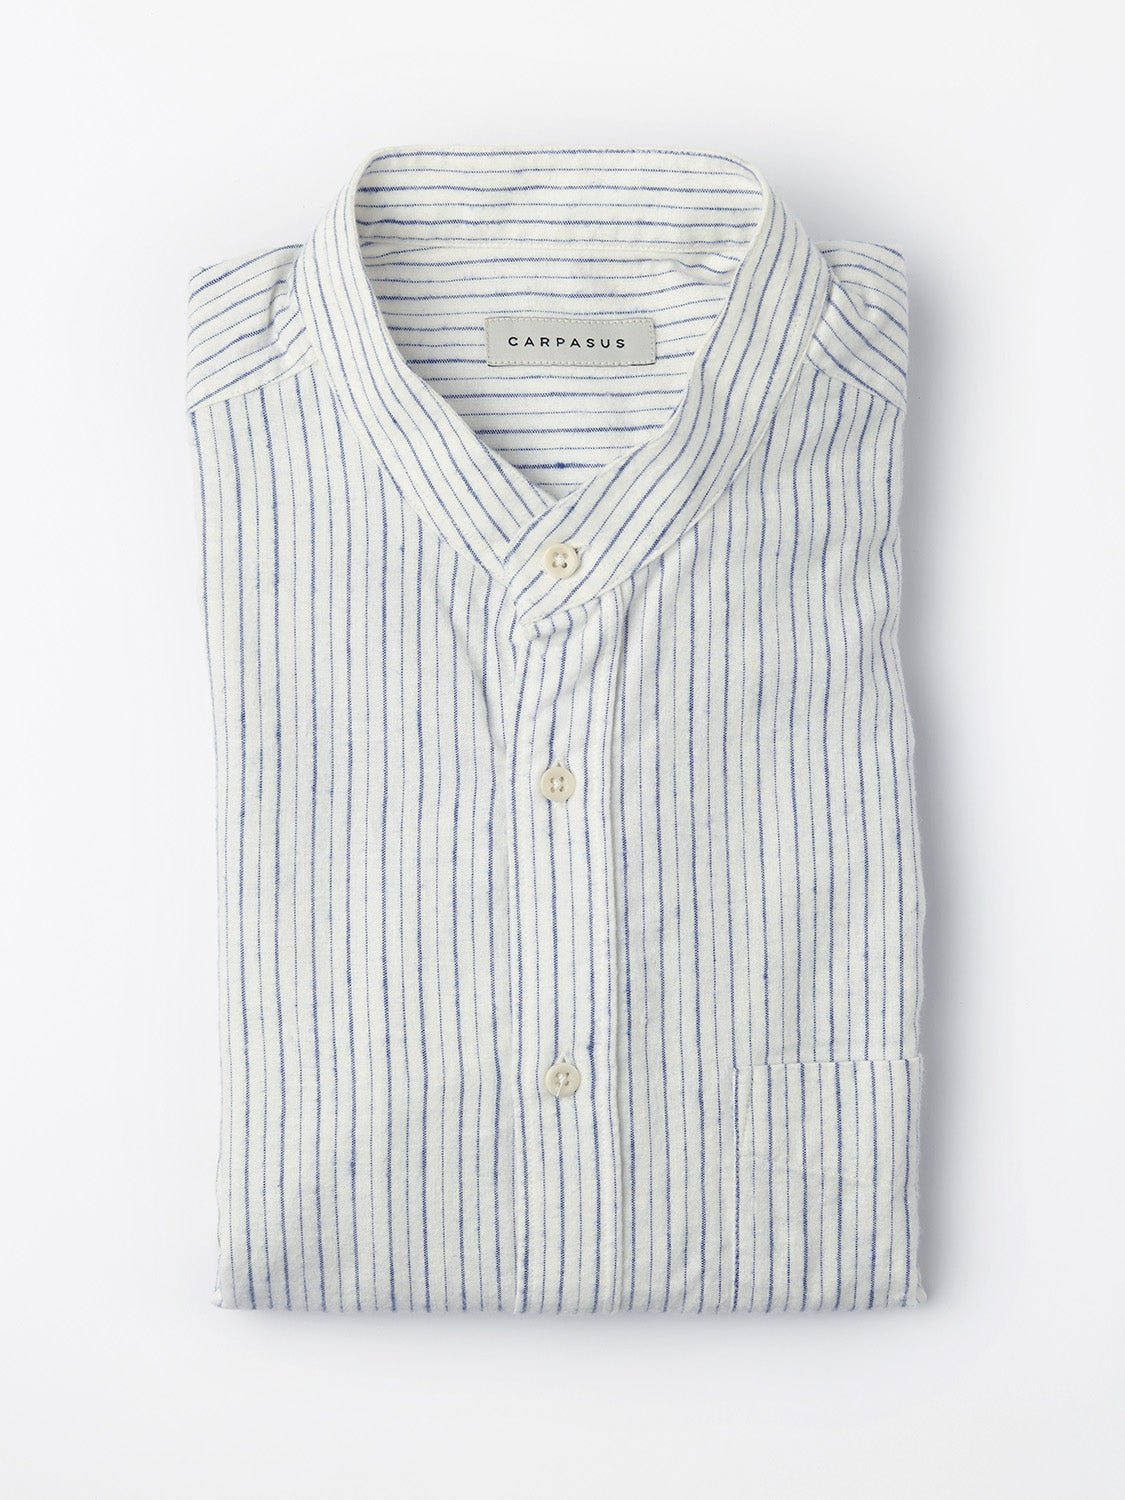 carpasus sustainable organic cotton and linen shirt scurido white/blue. Nachhaltiges Carpasus Hemd Scurido aus Bio Baumwolle und Leinen in Weiss/Blau